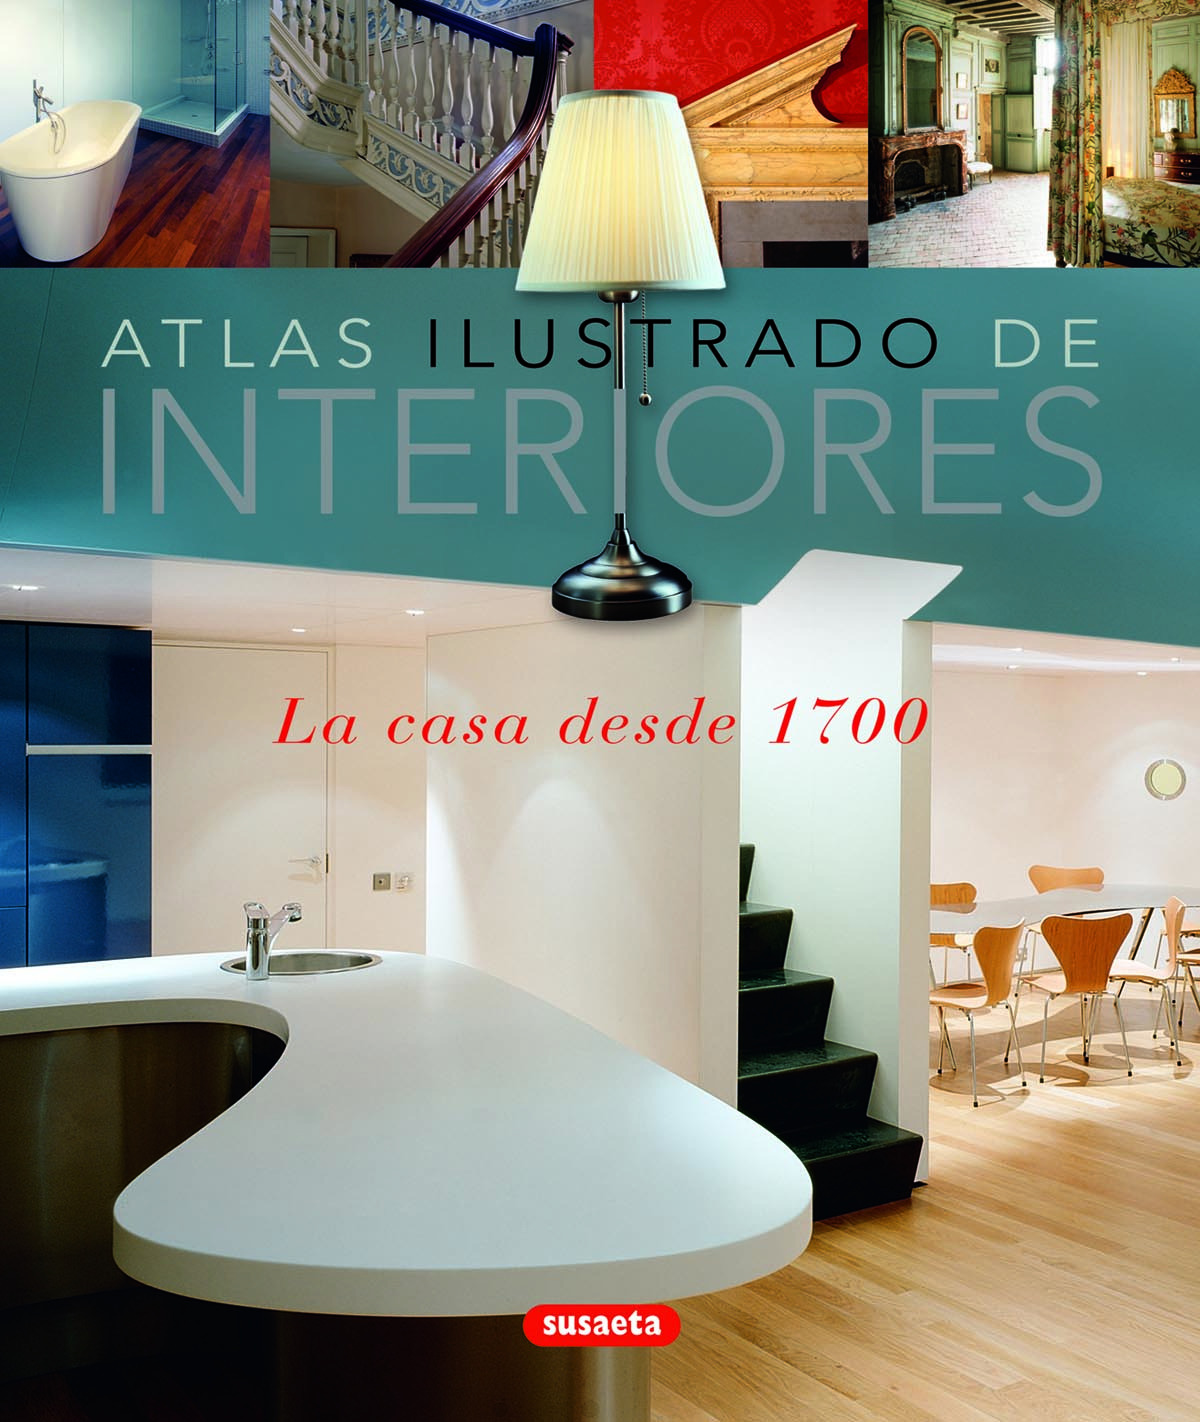 Atlas ilustrado de interiores - Susaeta, Equipo